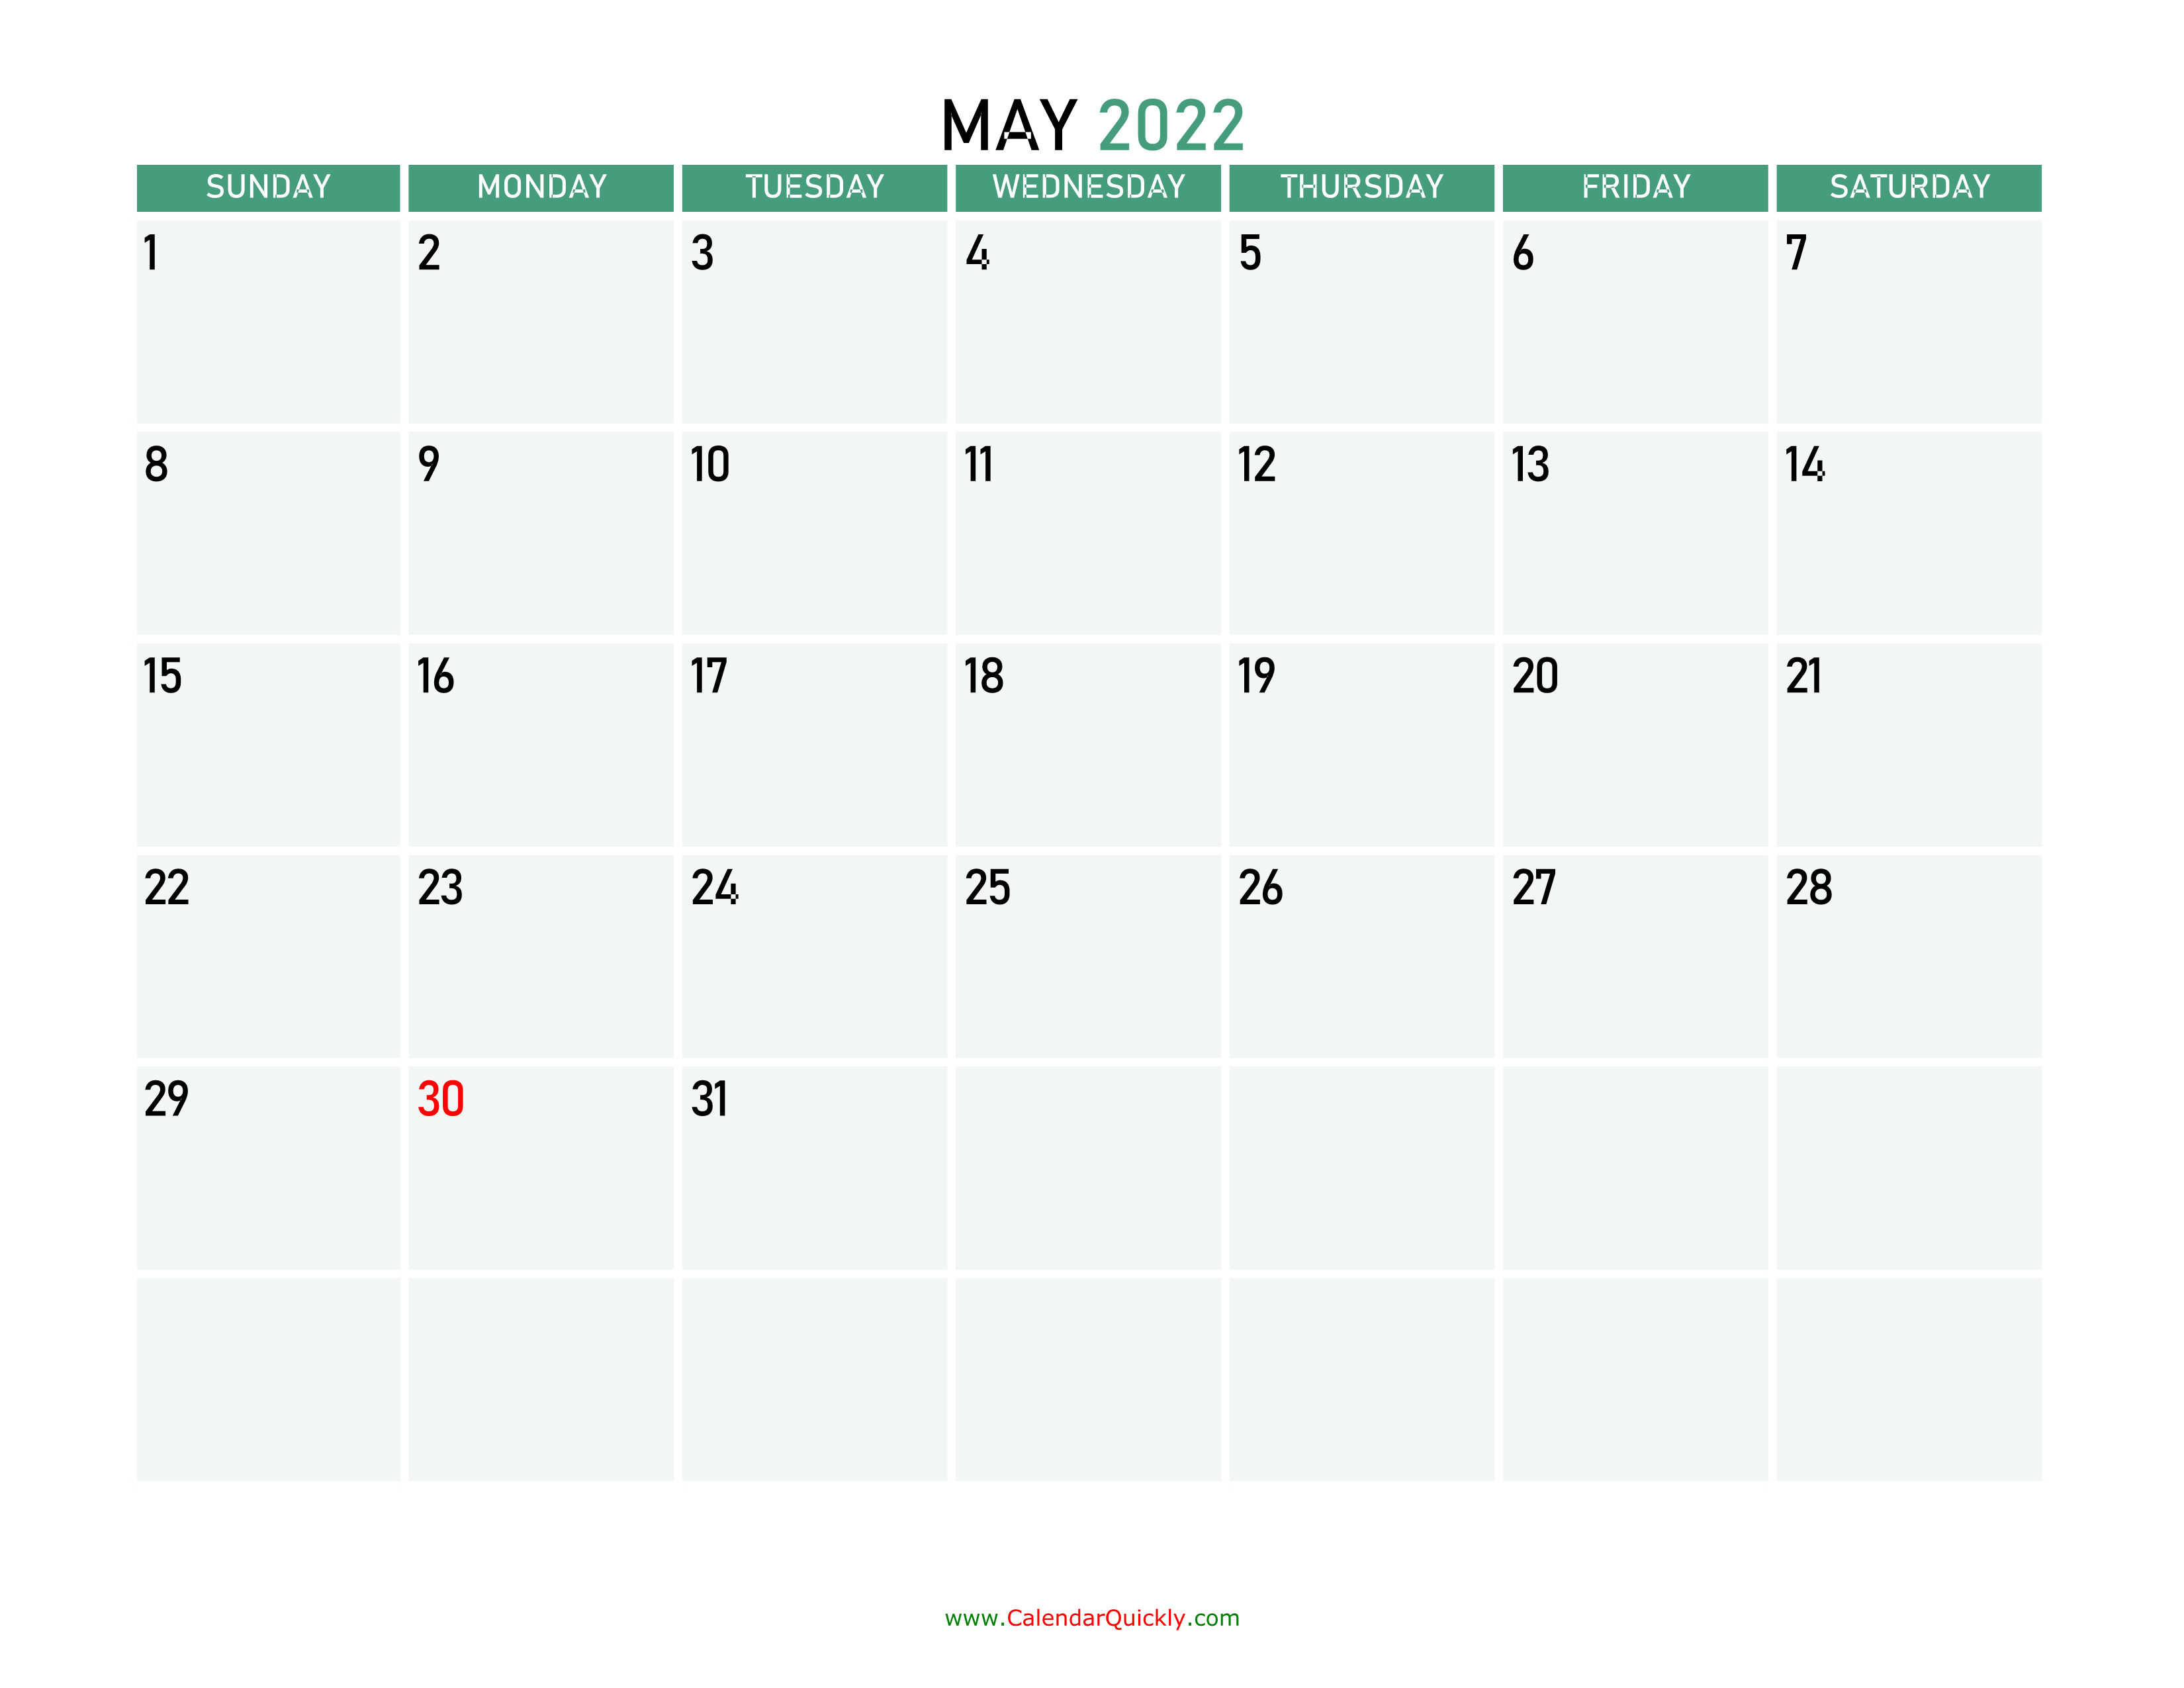 may 2022 printable calendar calendar quickly